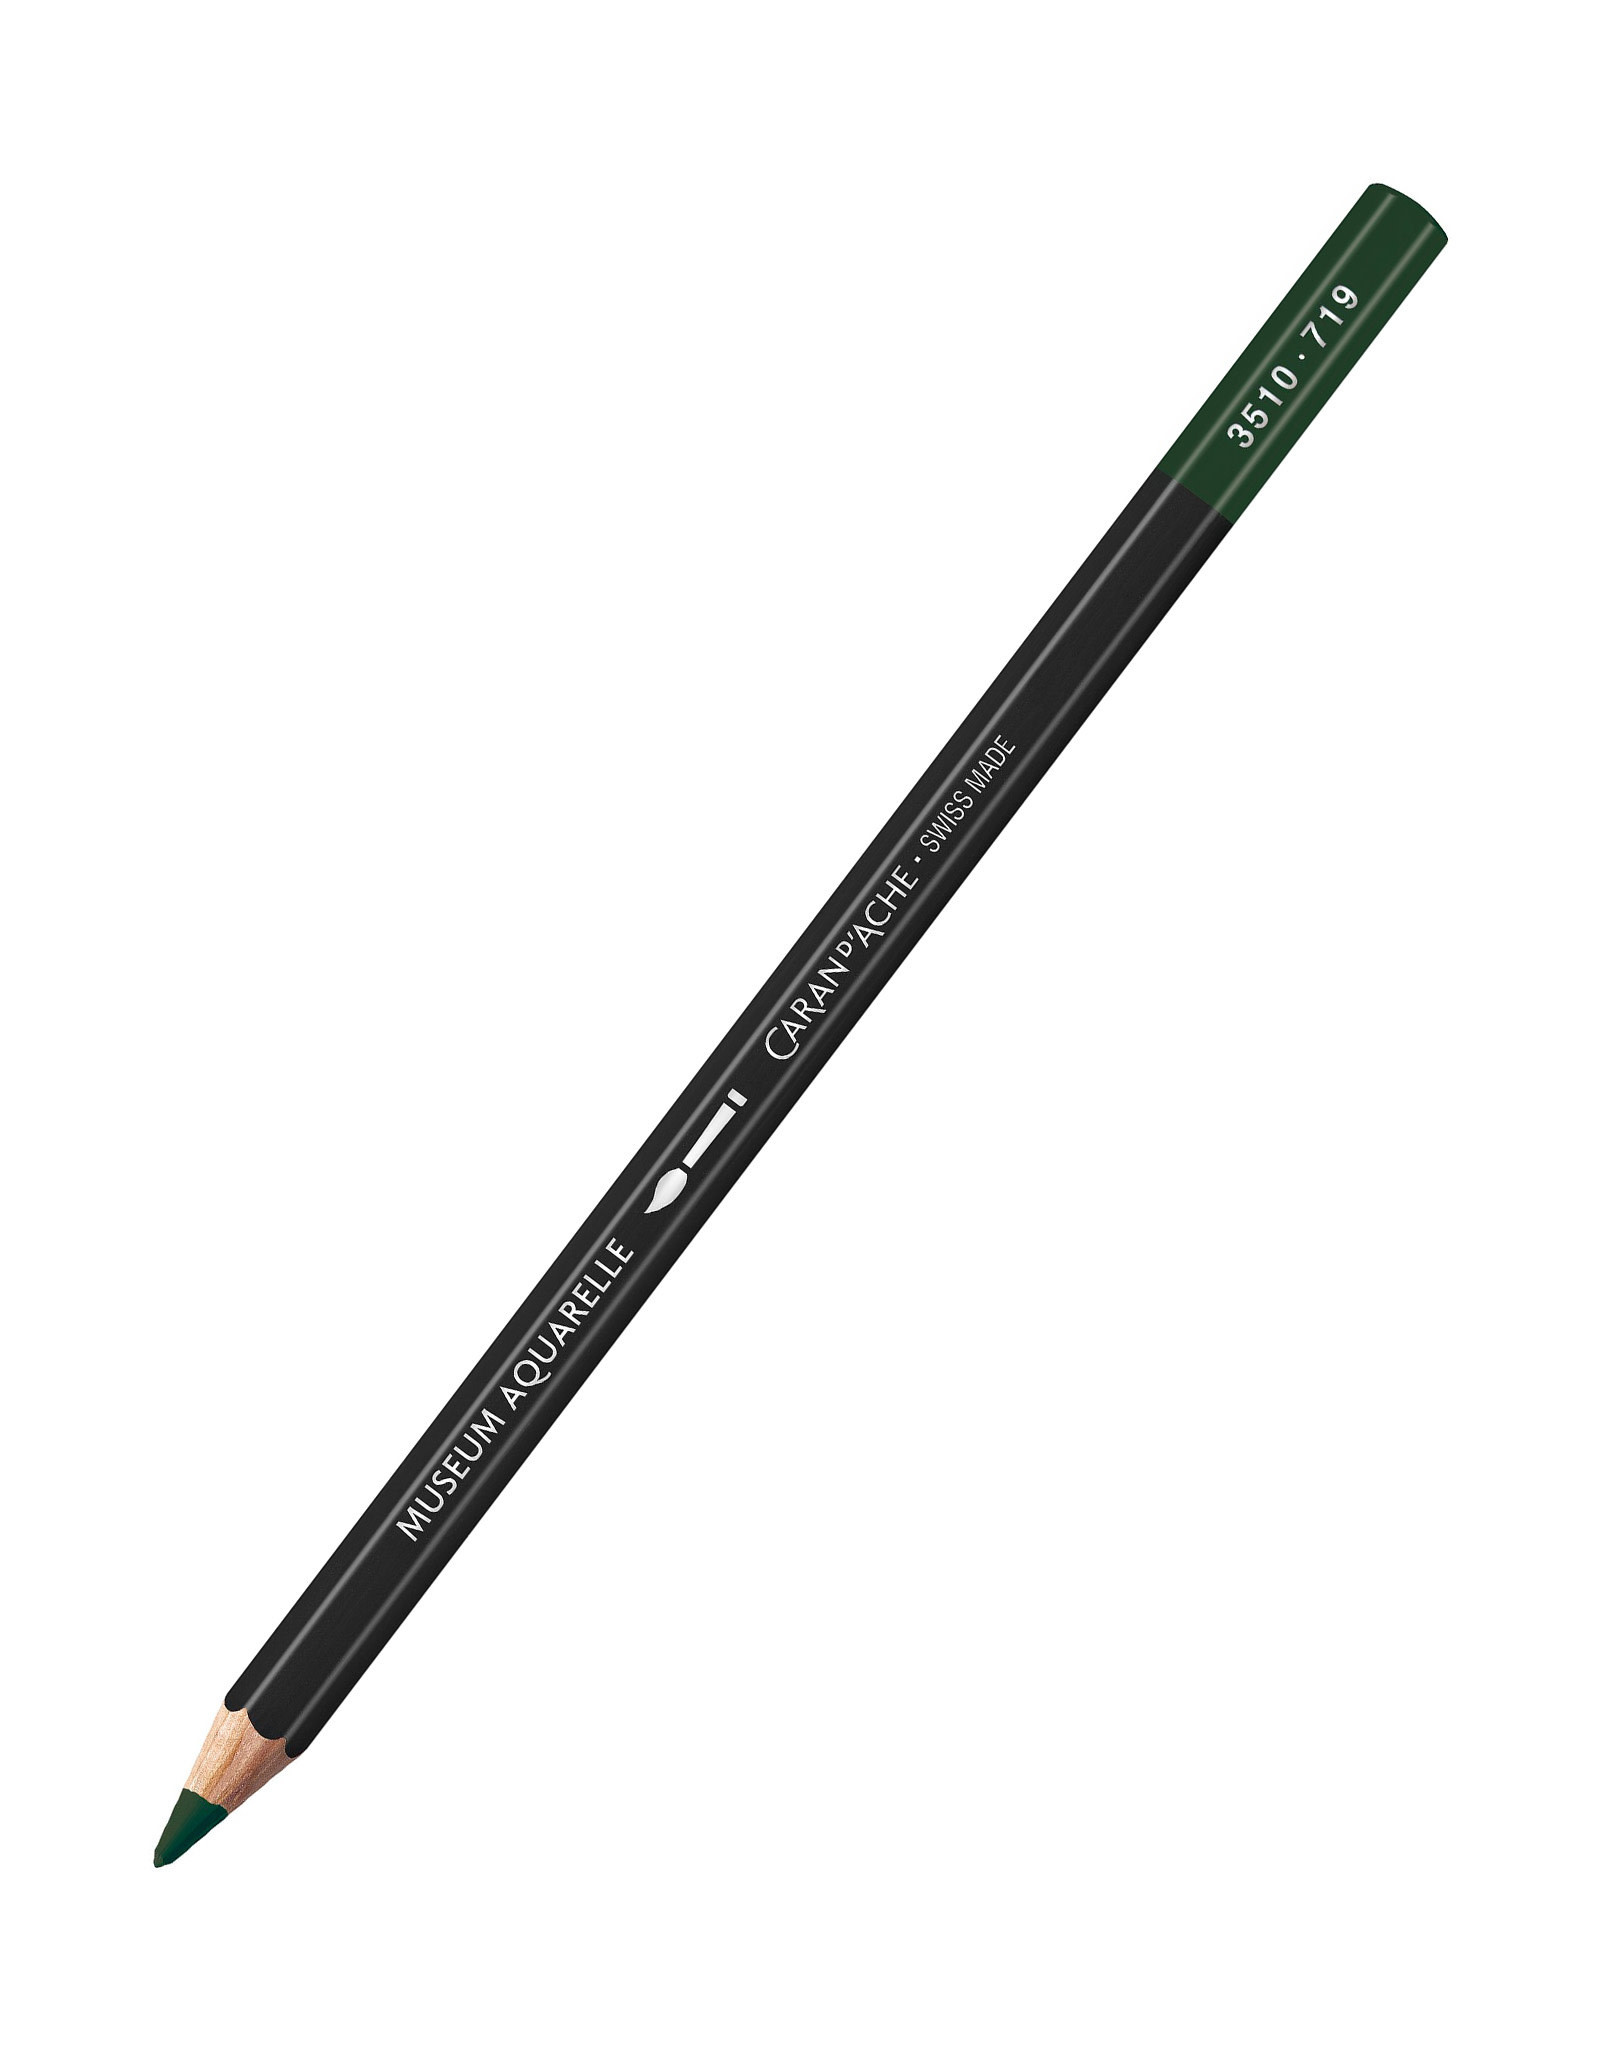 Caran d'Ache Caran D'Ache Museum Aquarelle Colored Pencils, Dark Green